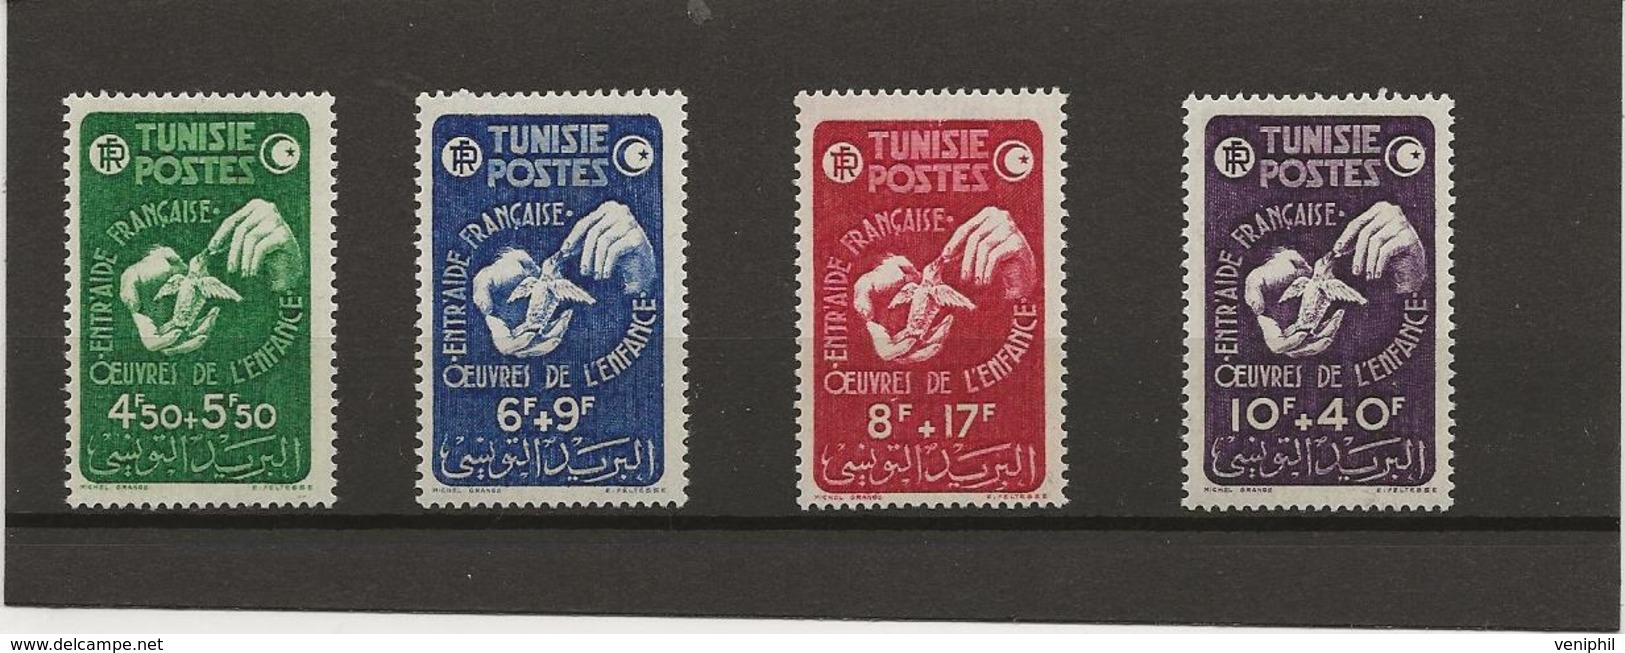 TUNISIE - N° 320 A 323 NEUF SANS CHARNIERE  -ANNEE 1947 - Neufs